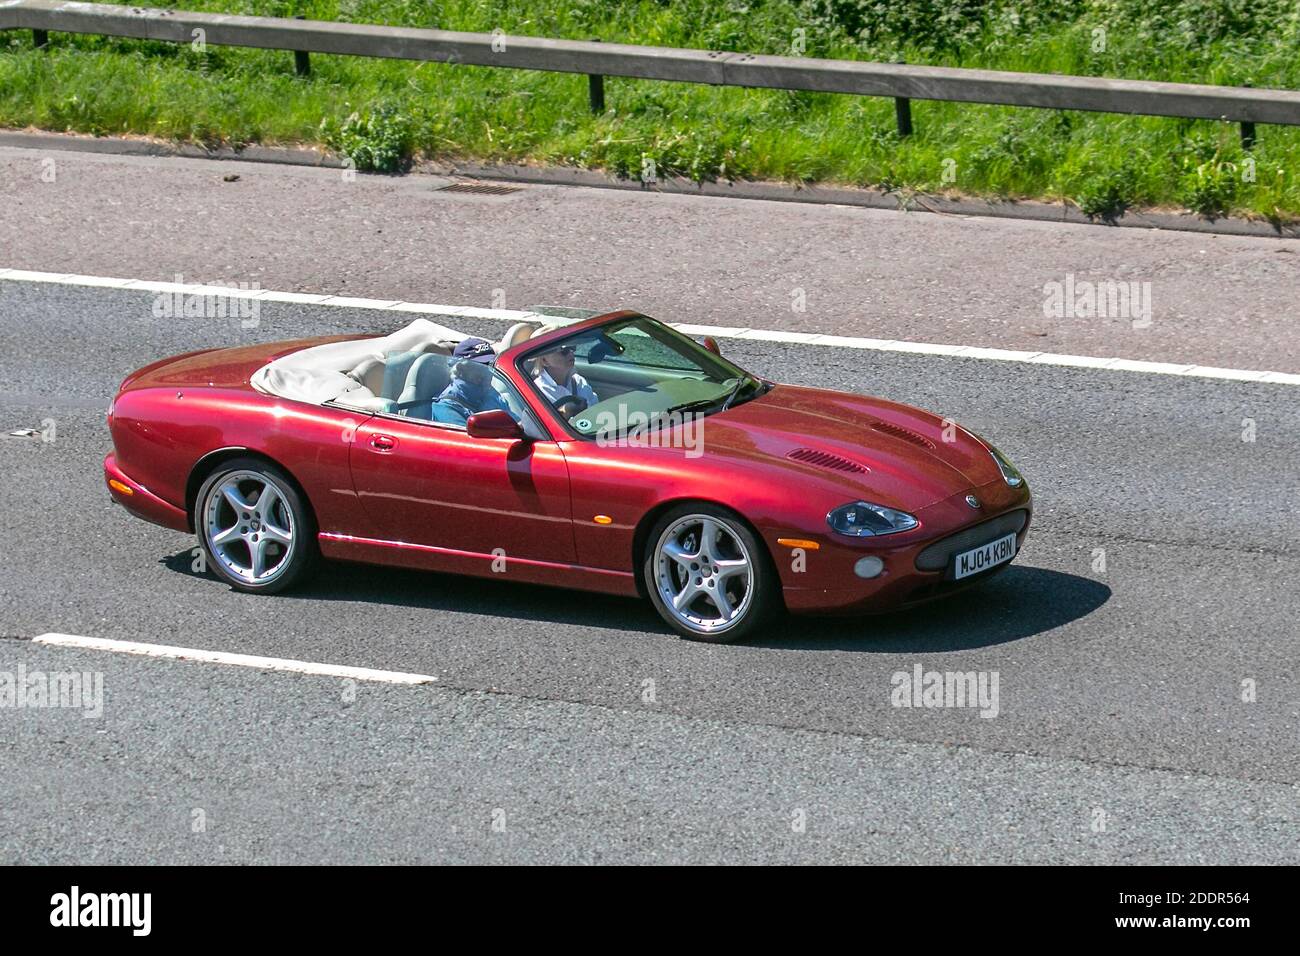 2004 Red Jaguar XKR Cabrio Auto; Fahrzeugverkehr, bewegliche Fahrzeuge, Autos, Fahrzeug fahren auf britischen Straßen, Motoren, Fahren auf der Autobahn M6 Autobahn britischen Straßennetz. Stockfoto